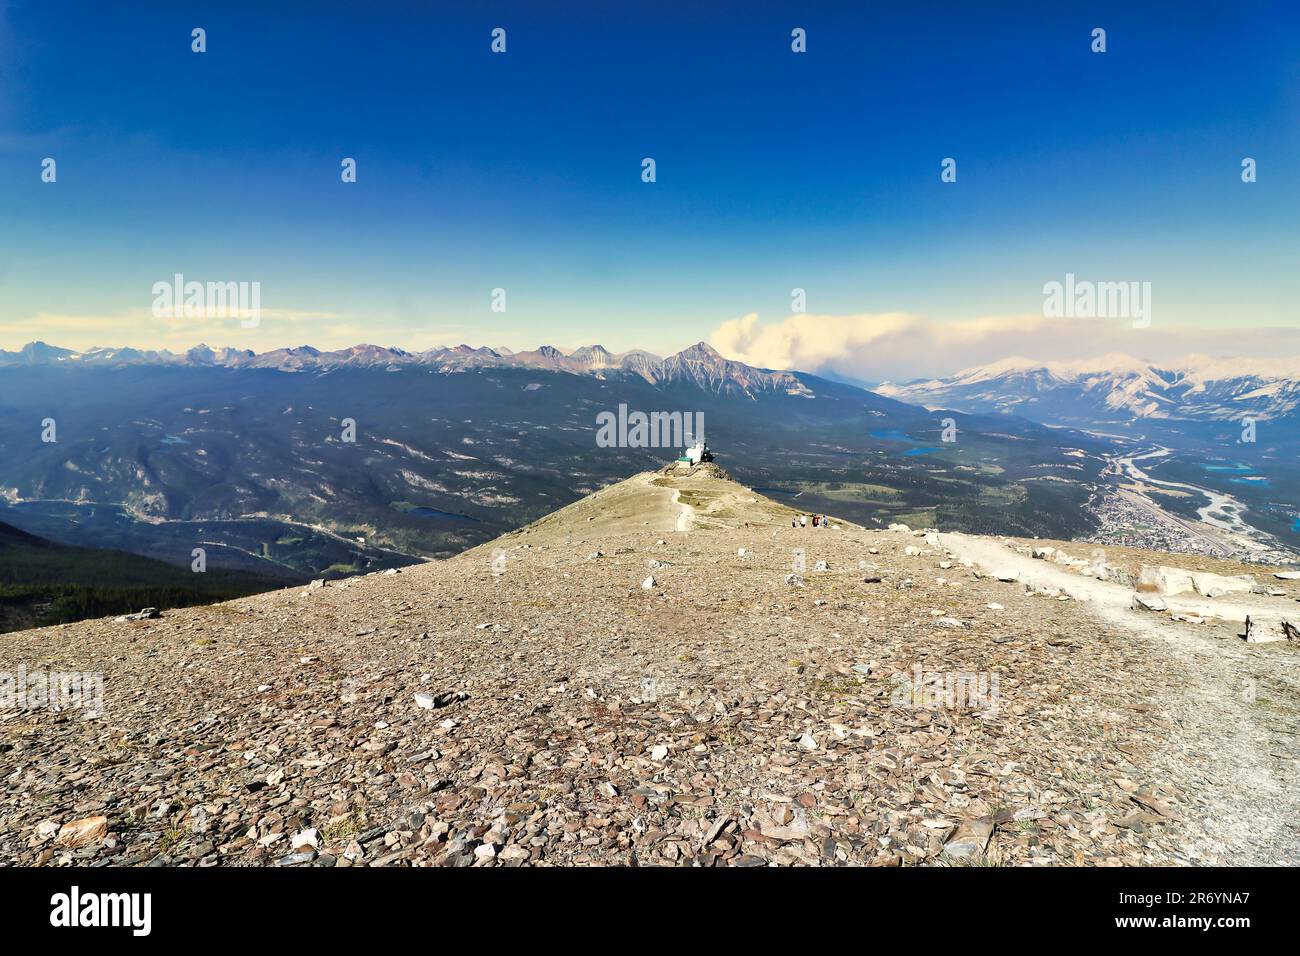 Una spettacolare vista panoramica delle montagne intorno alla citta' di Jasper dalla cima del Monte Whistler, il Jasper Sky Tram nelle montagne rocciose del Canada Foto Stock